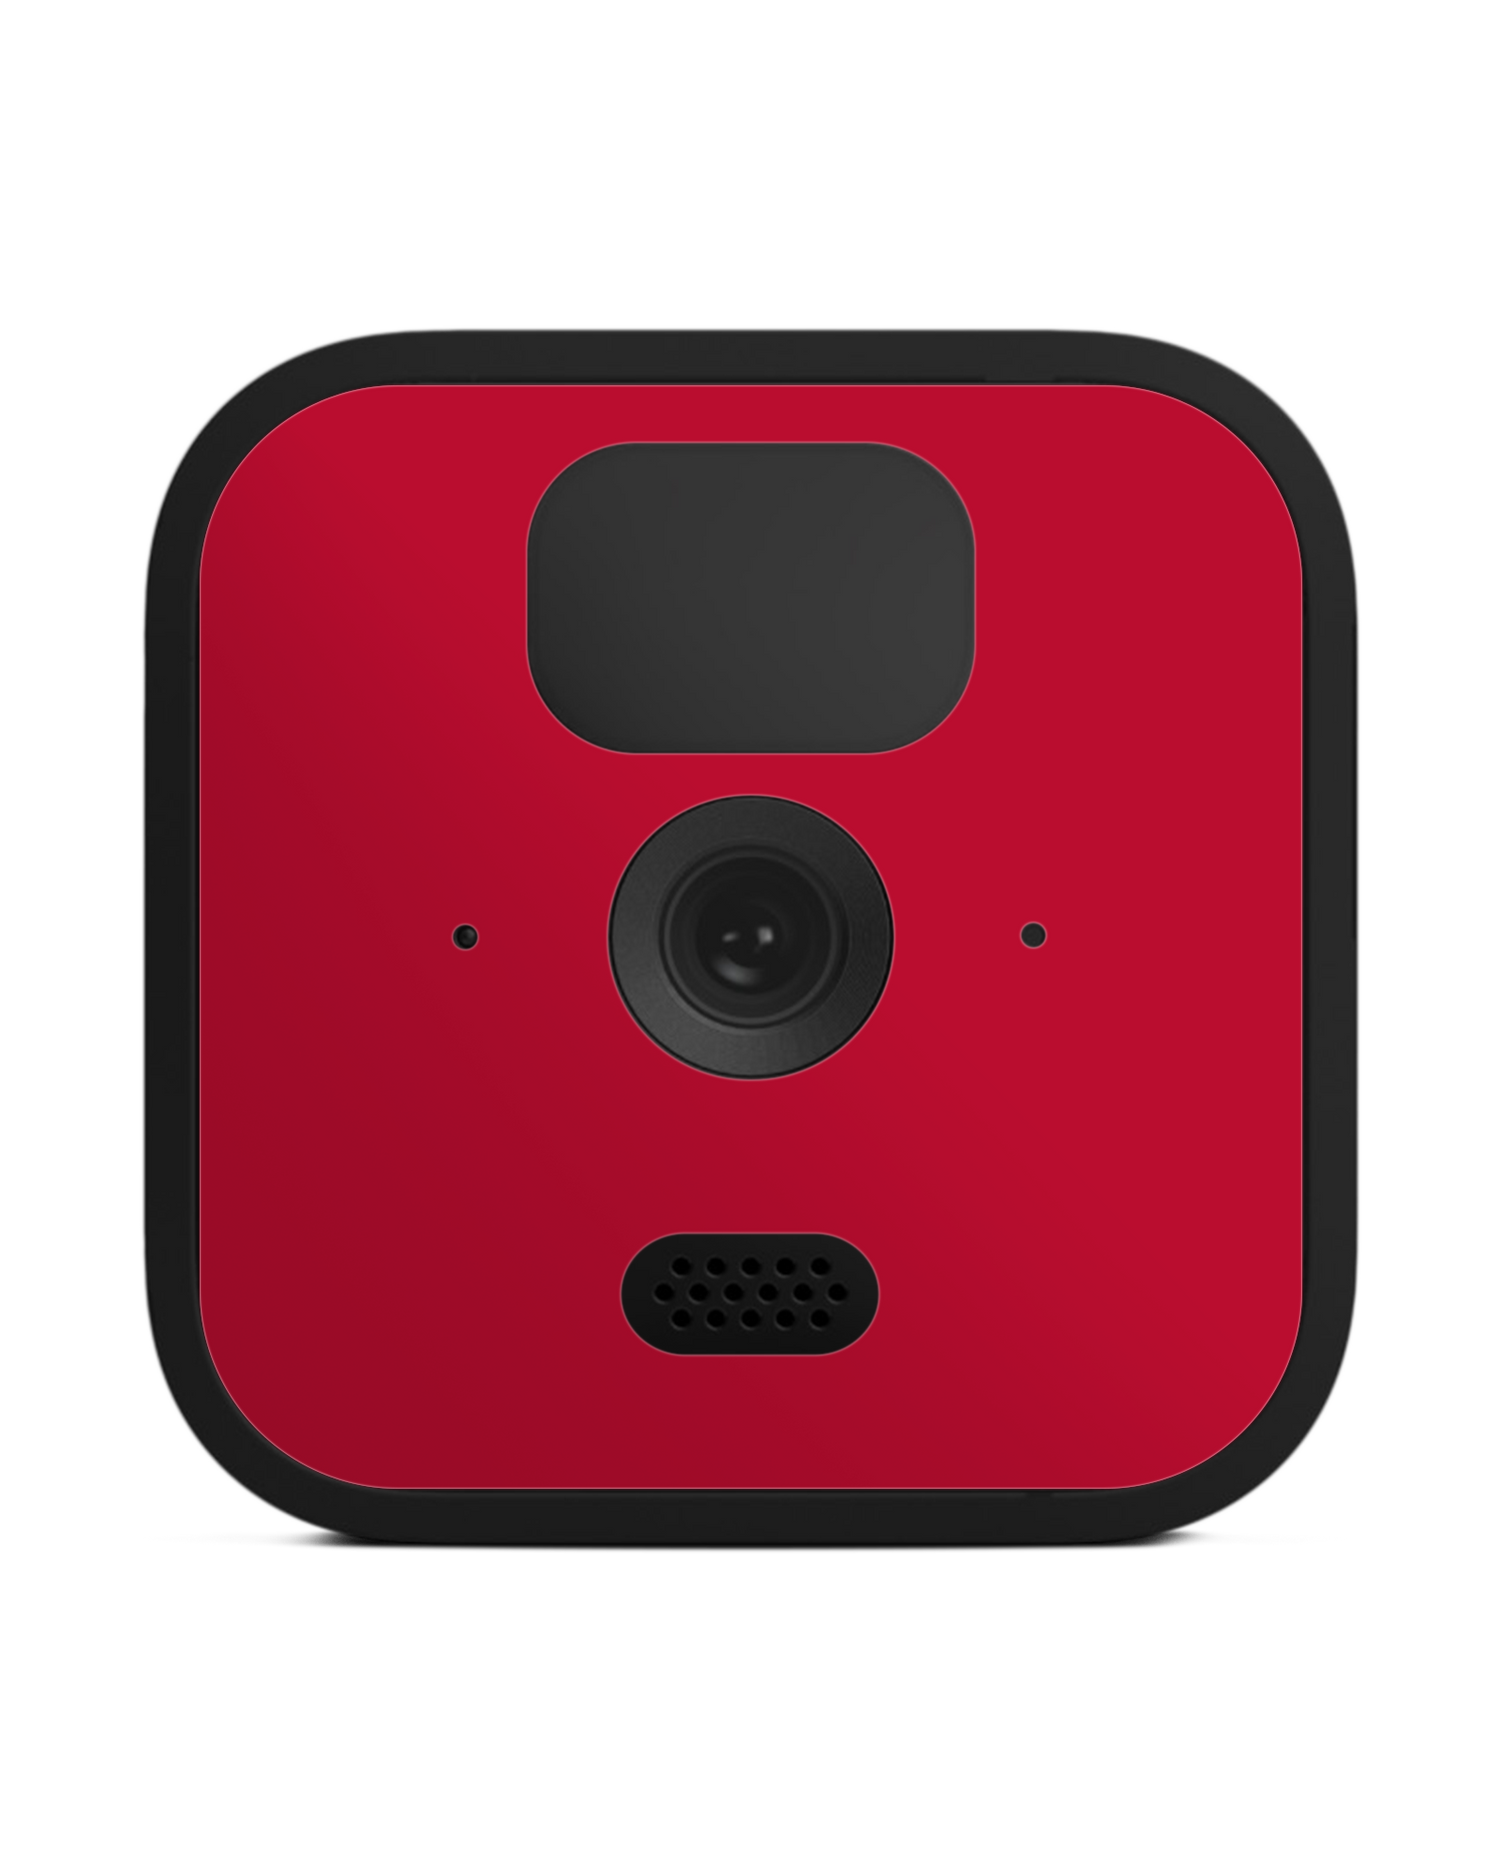 RED Kamera Aufkleber Blink Outdoor (2020): Vorderansicht